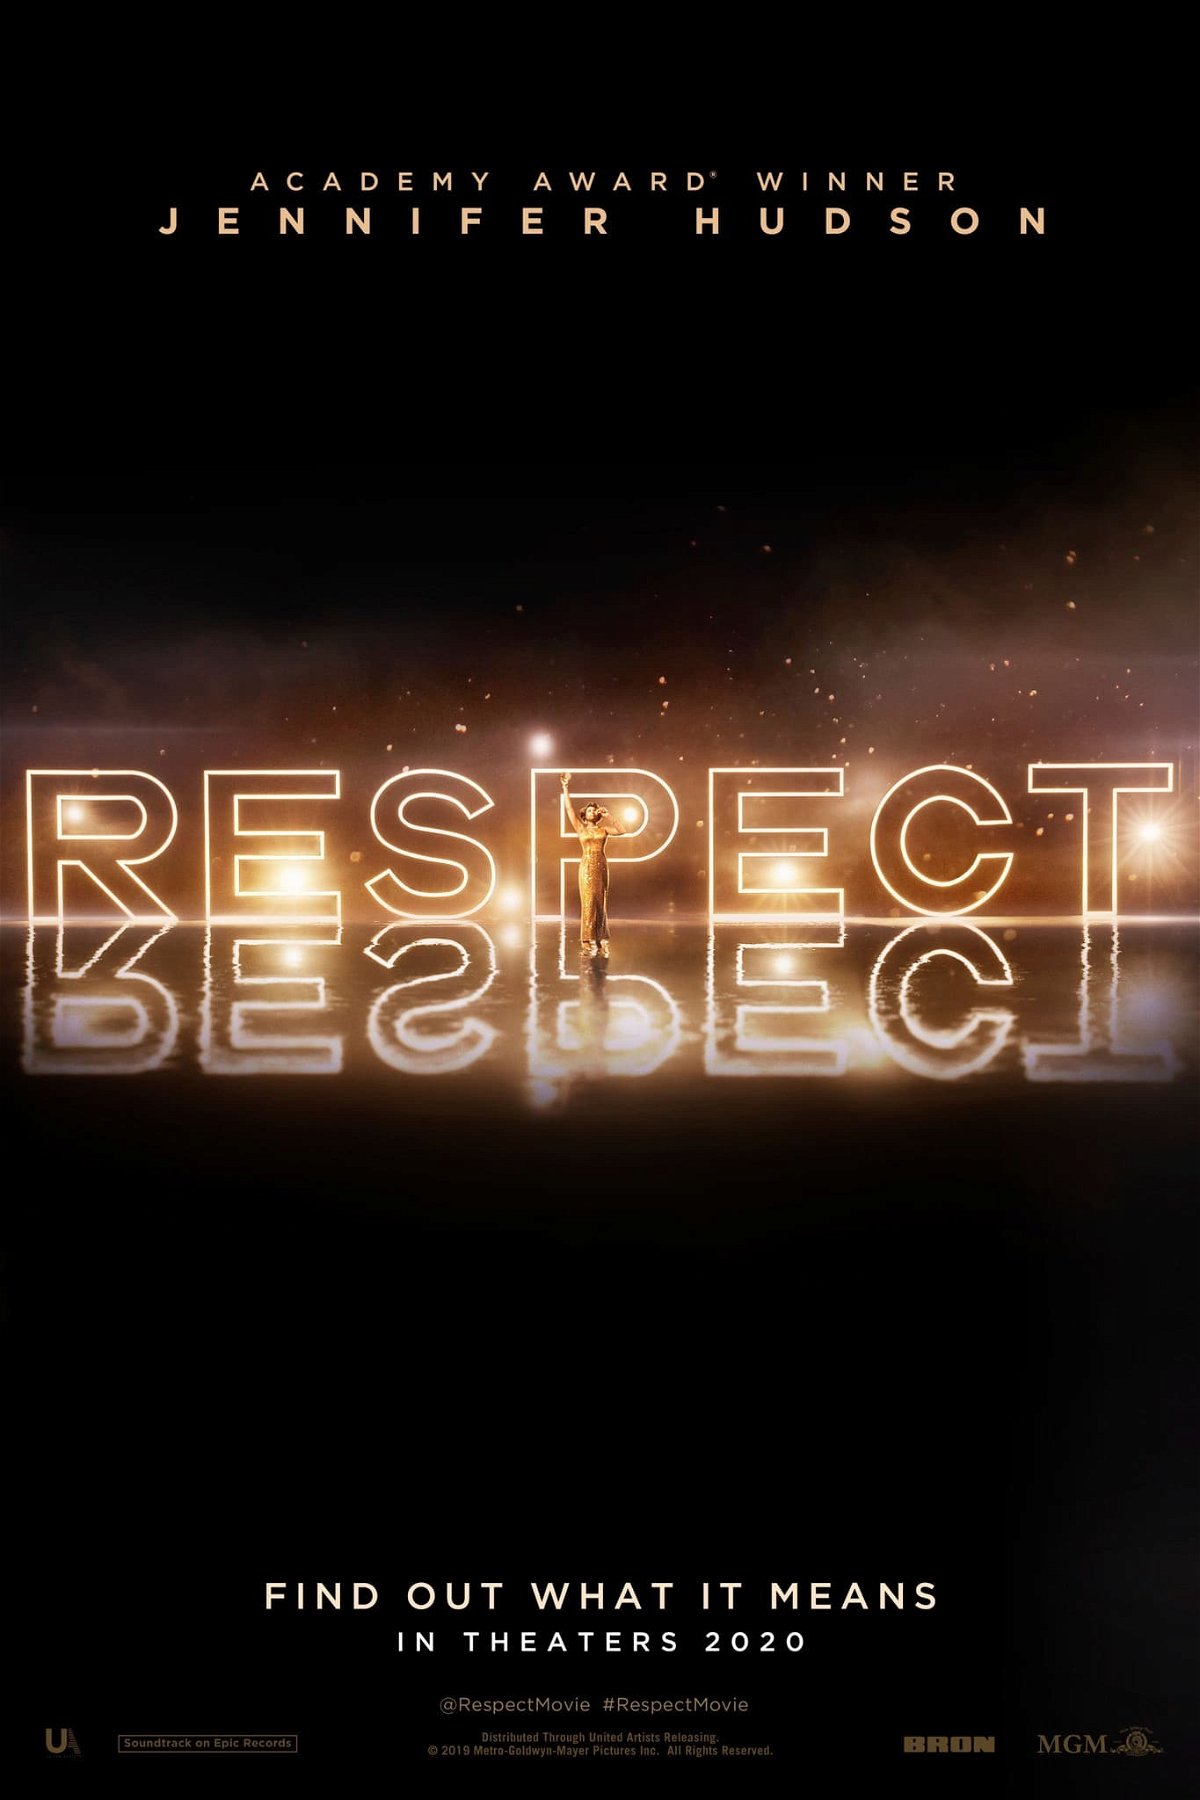 La scritta Respect illuminata sul poster del film